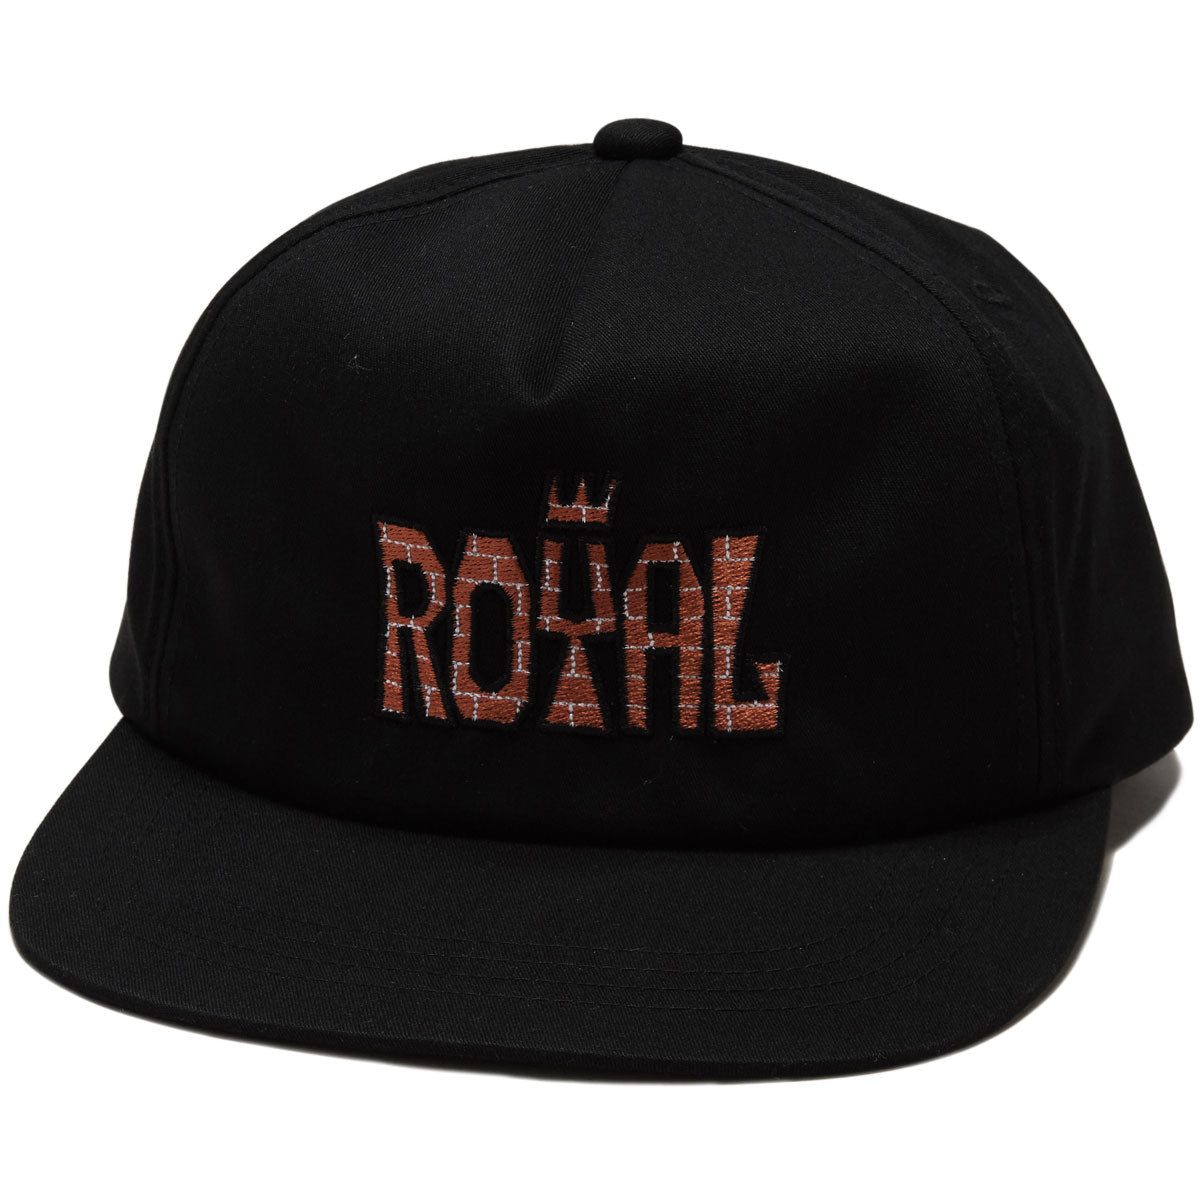 Royal Doggy Snapback Hat - Black image 1